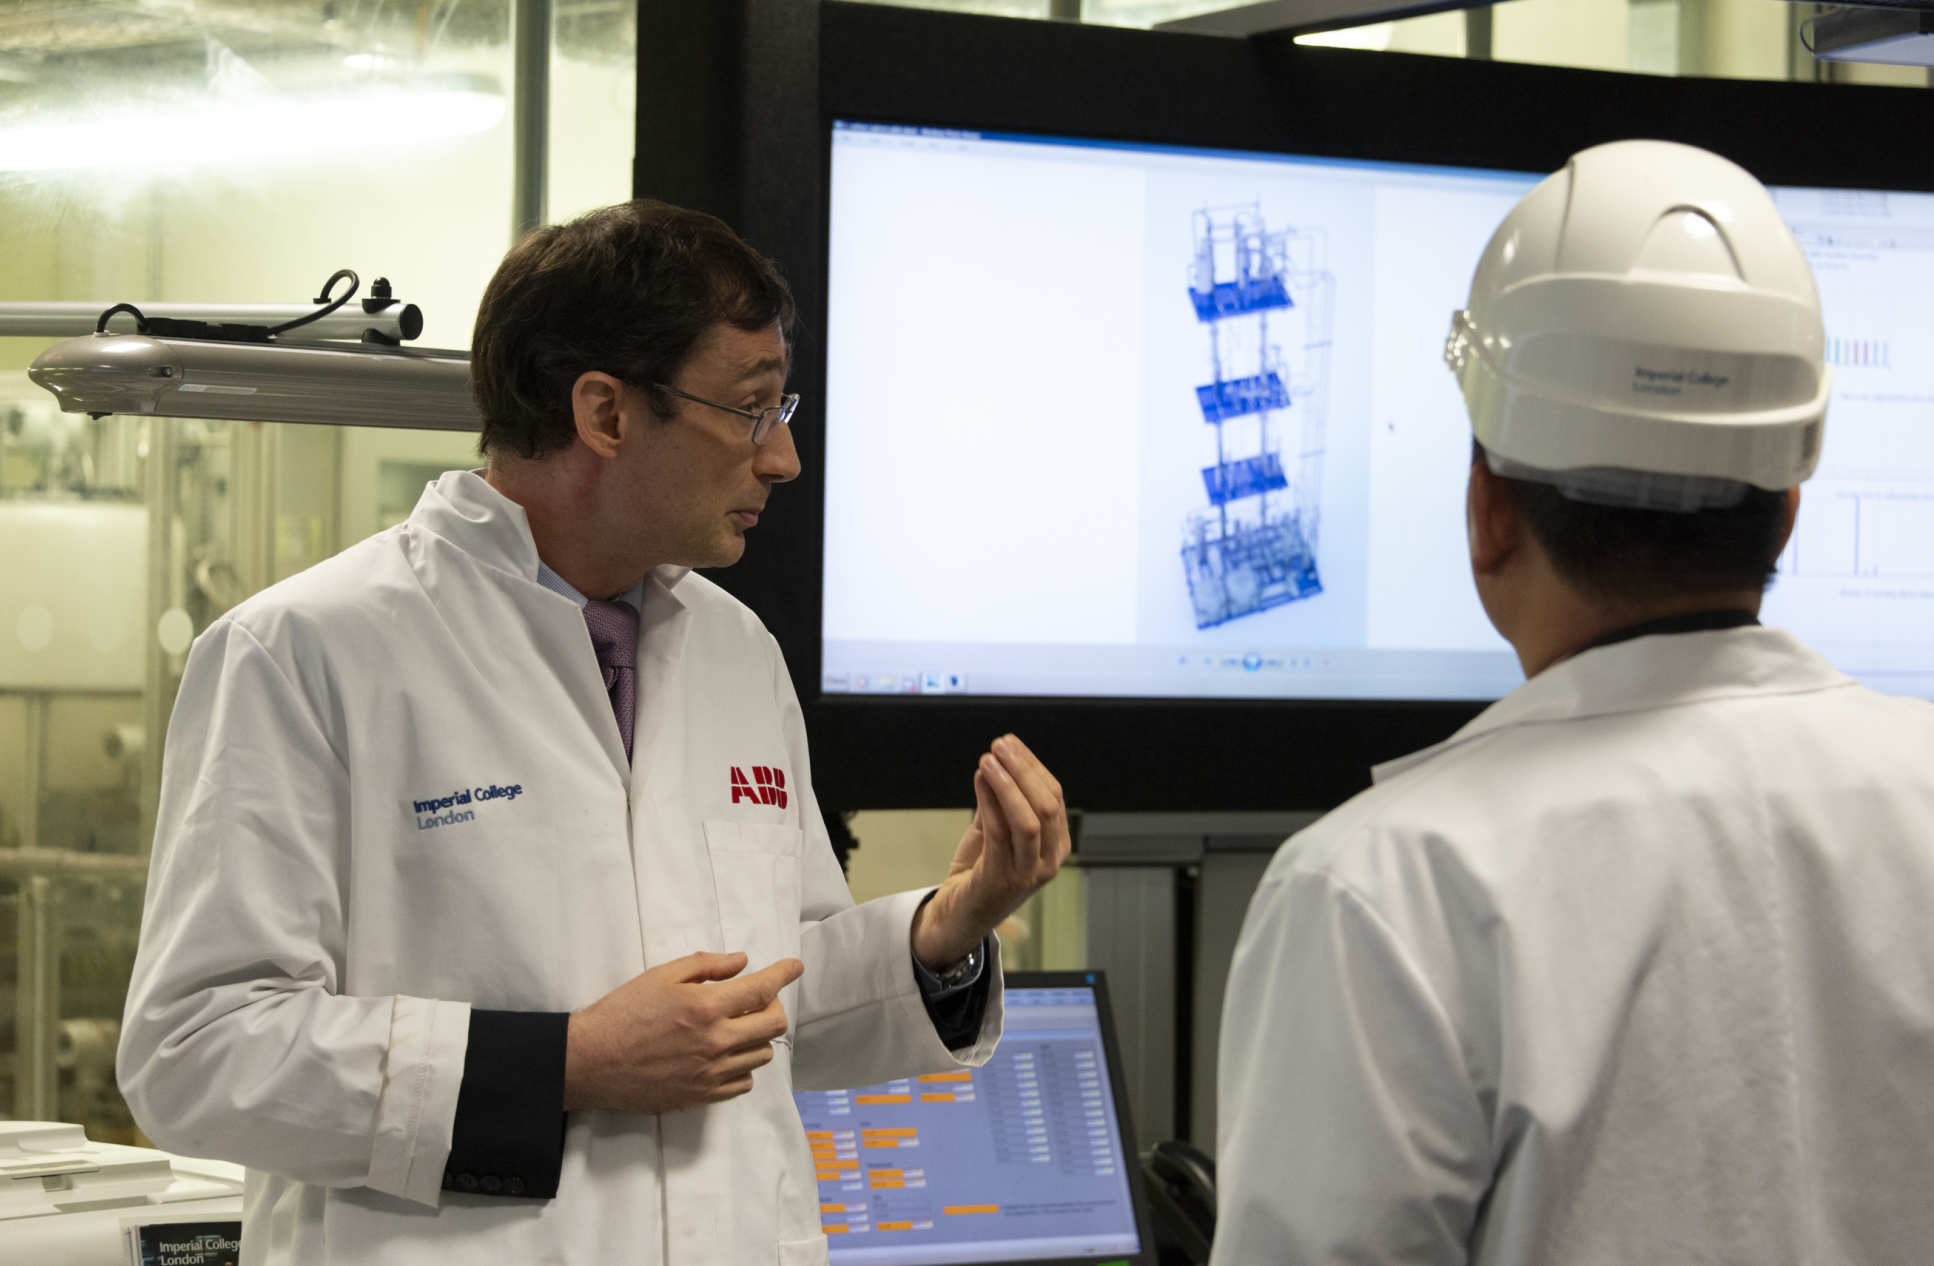 Dr Colin Hale gave a tour of the Carbon Capture Pilot Plant